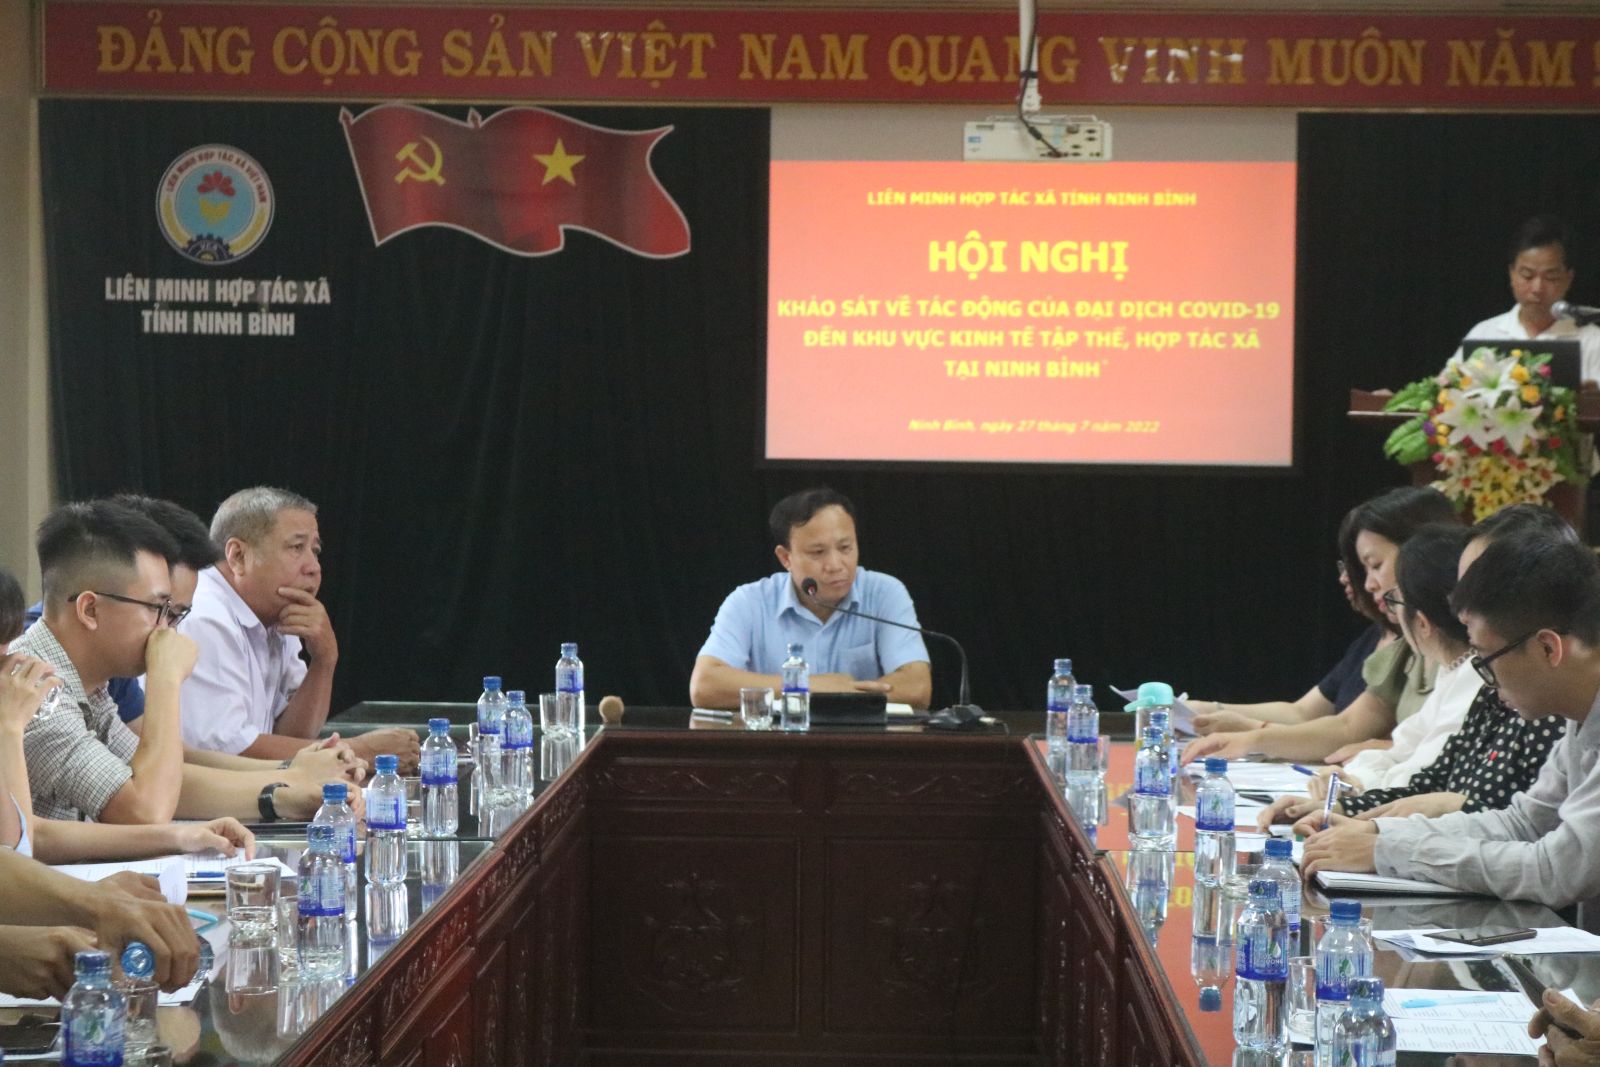 Hội nghị khảo sát tác động của đại dịch Covid-19 đối với thành viên, người lao động của HTX trên địa bàn tỉnh Ninh Bình